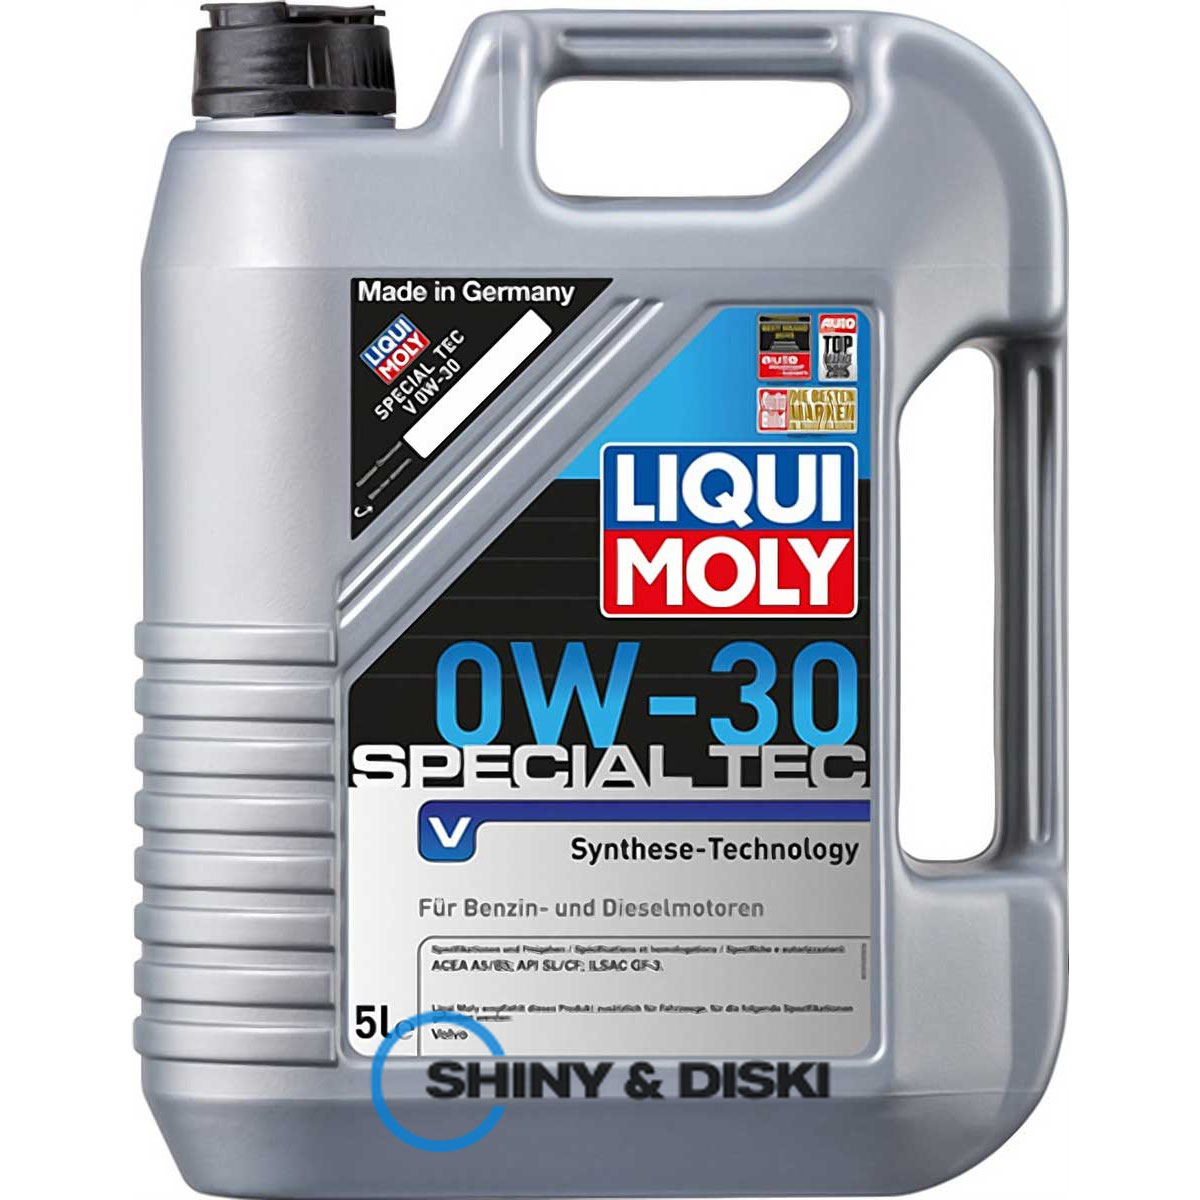 liqui moly special tec v 0w-30 (5л)